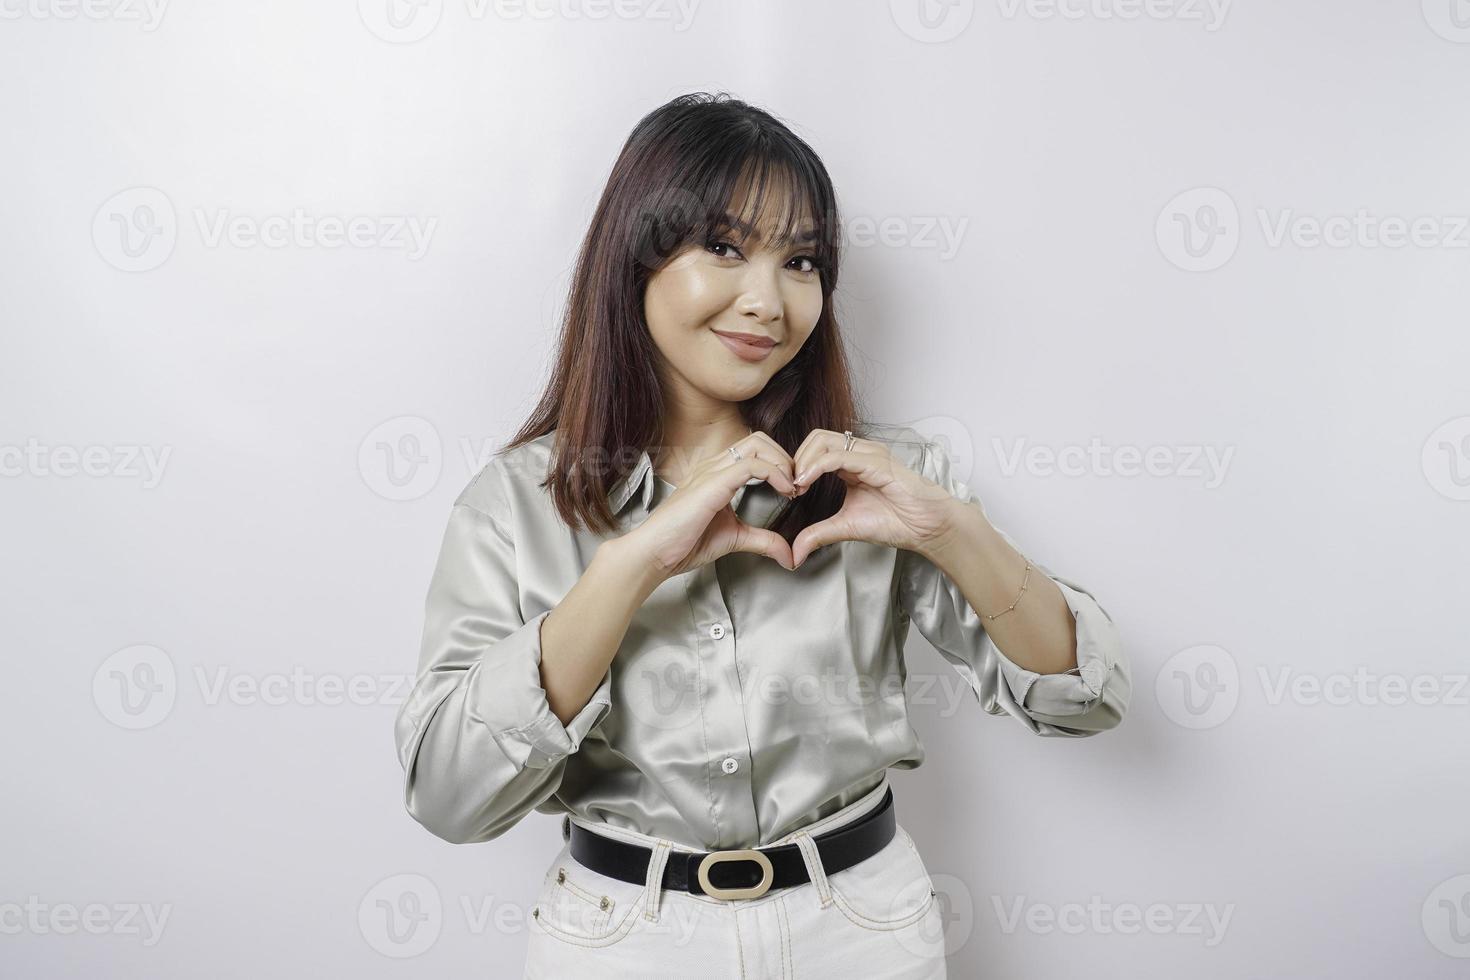 eine attraktive junge asiatische frau, die ein salbeigrünes hemd trägt, fühlt sich glücklich und eine romantische formherzgeste drückt zärtliche gefühle aus foto